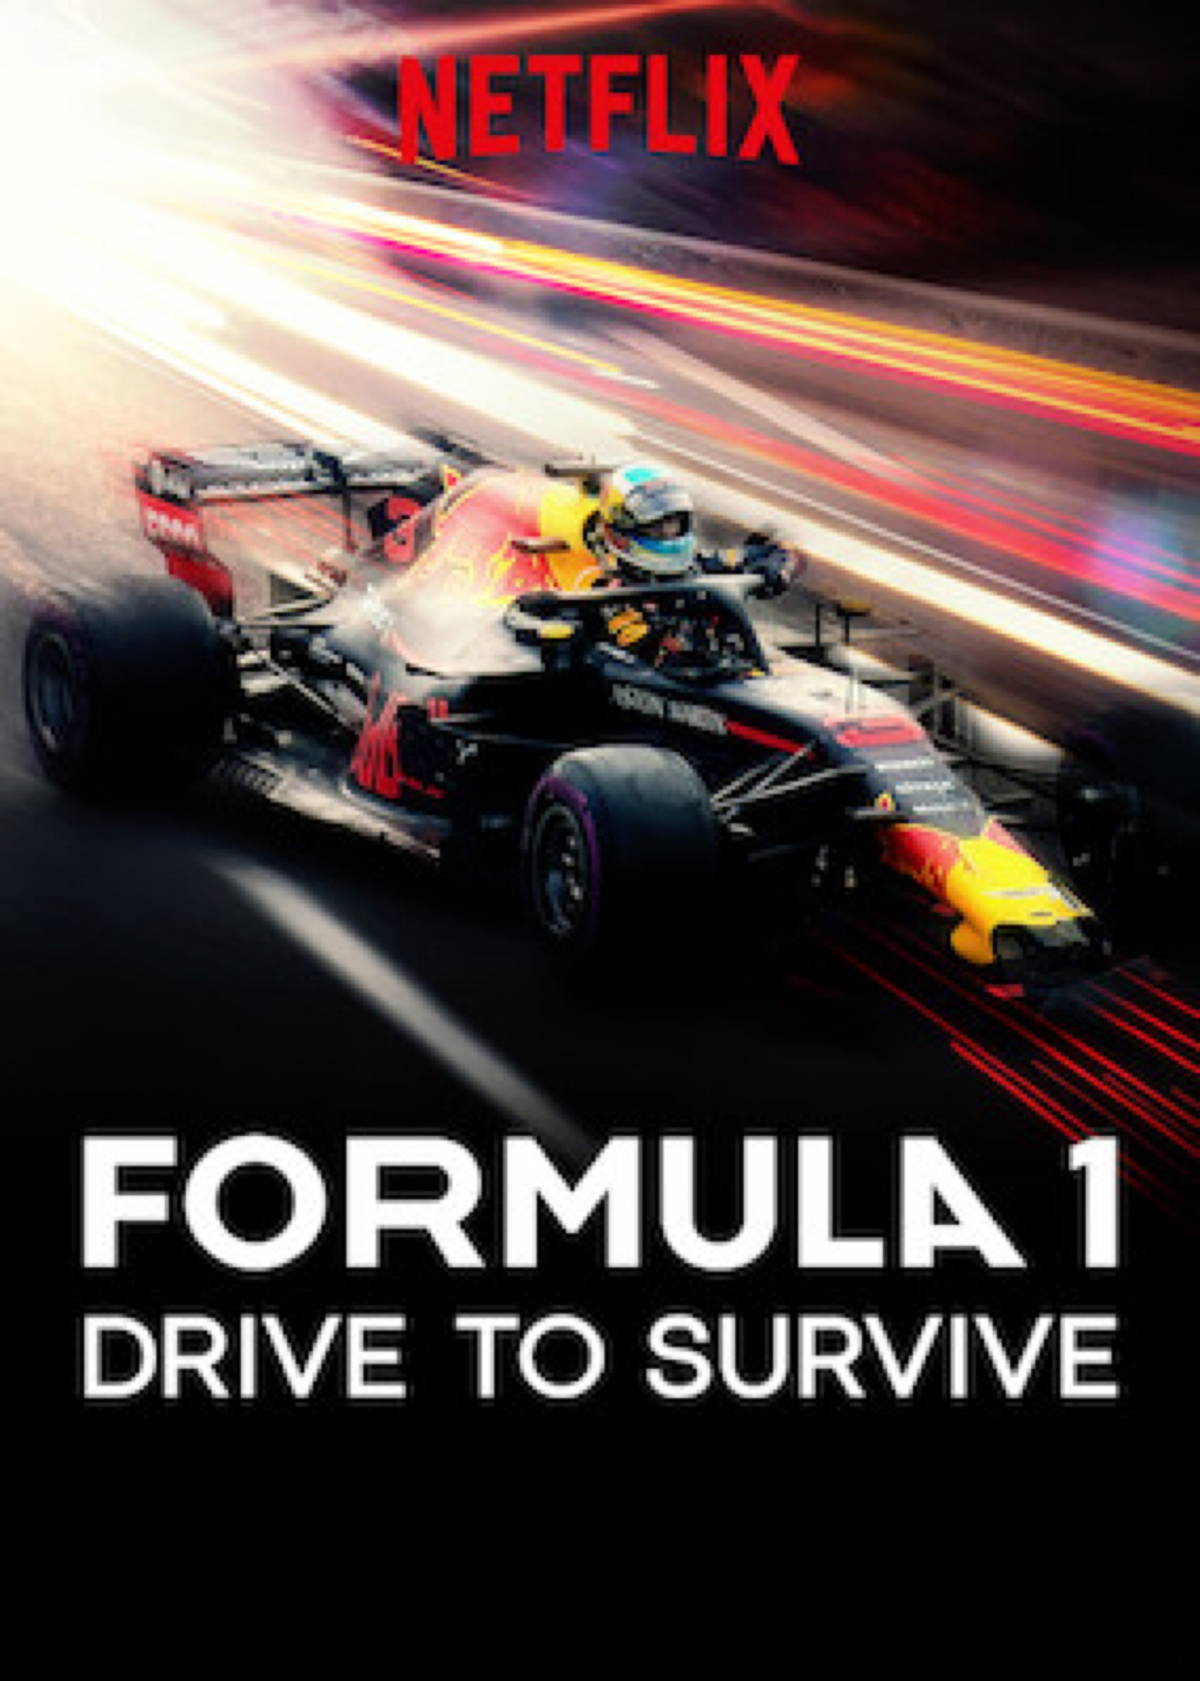 Formula 1: Drive to Survive Season 1 Episode 3 “Redemption”